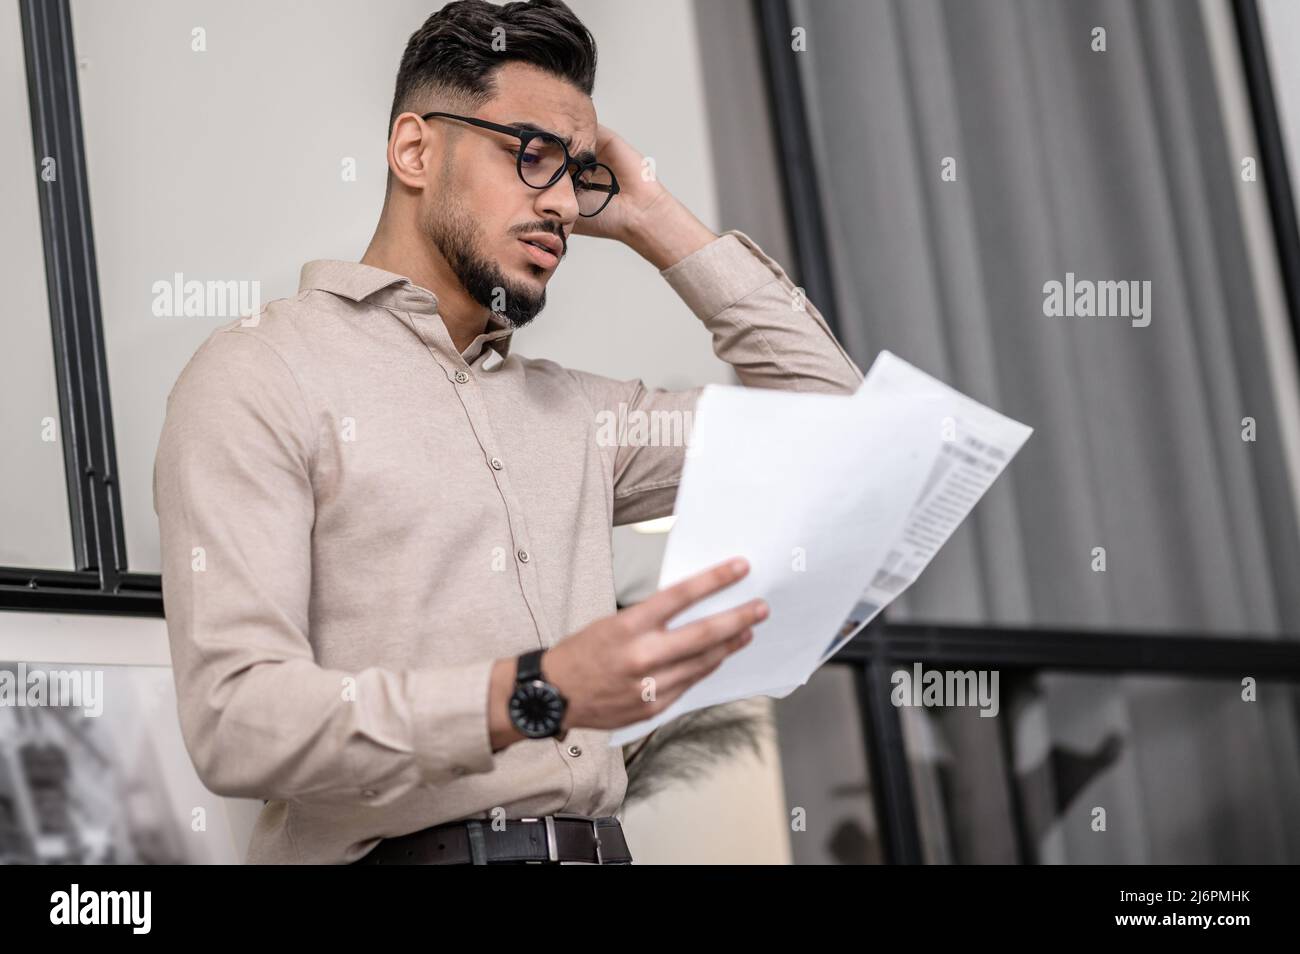 Ein junger Mann, der beim Lesen eines Papiers nachdenklich aussieht Stockfoto